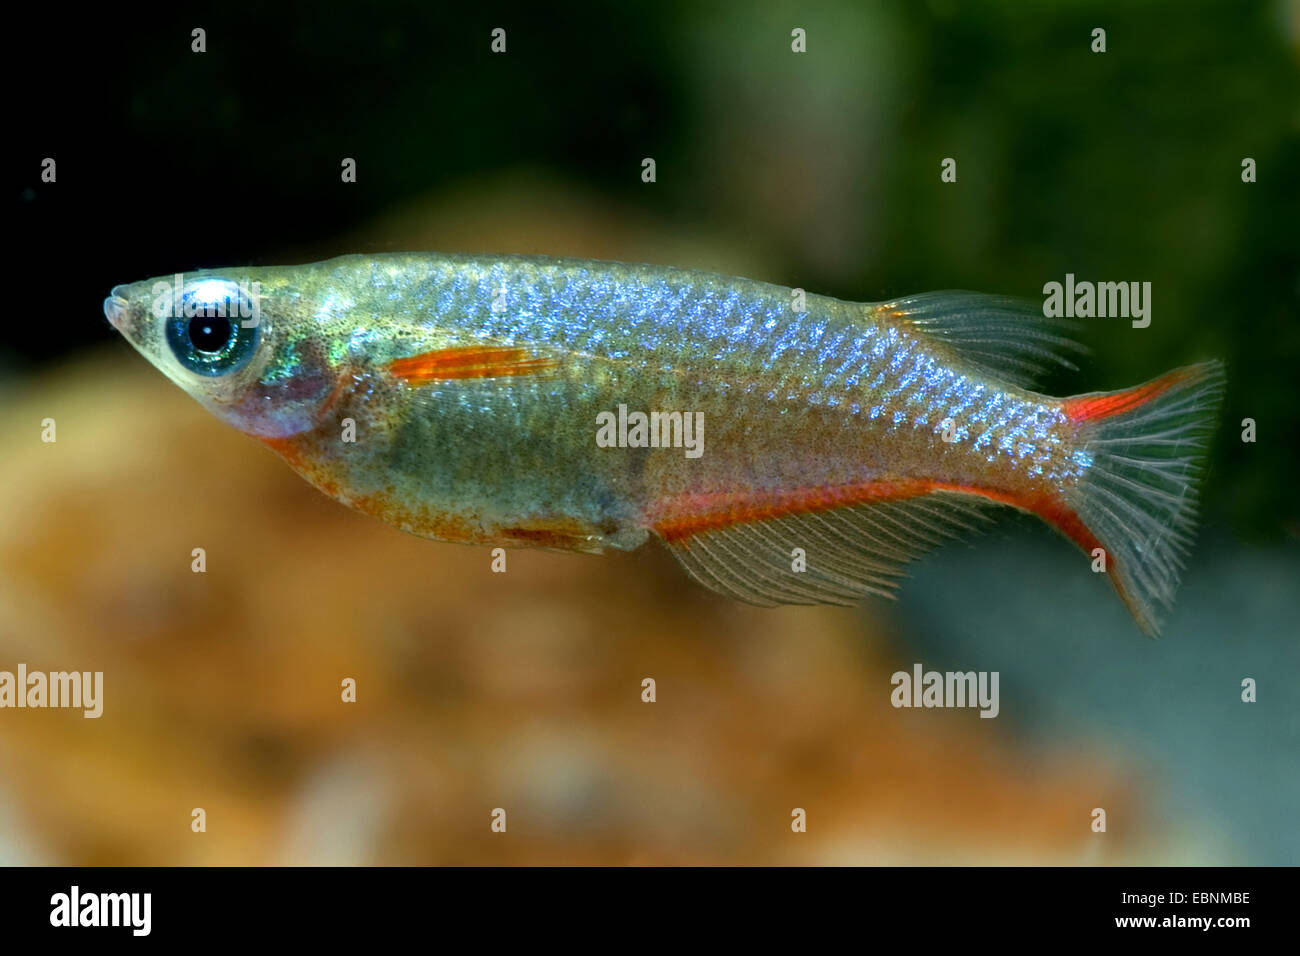 Neon Ricefish, Daisy's Ricefish (Oryzias woworae), swimming Stock Photo